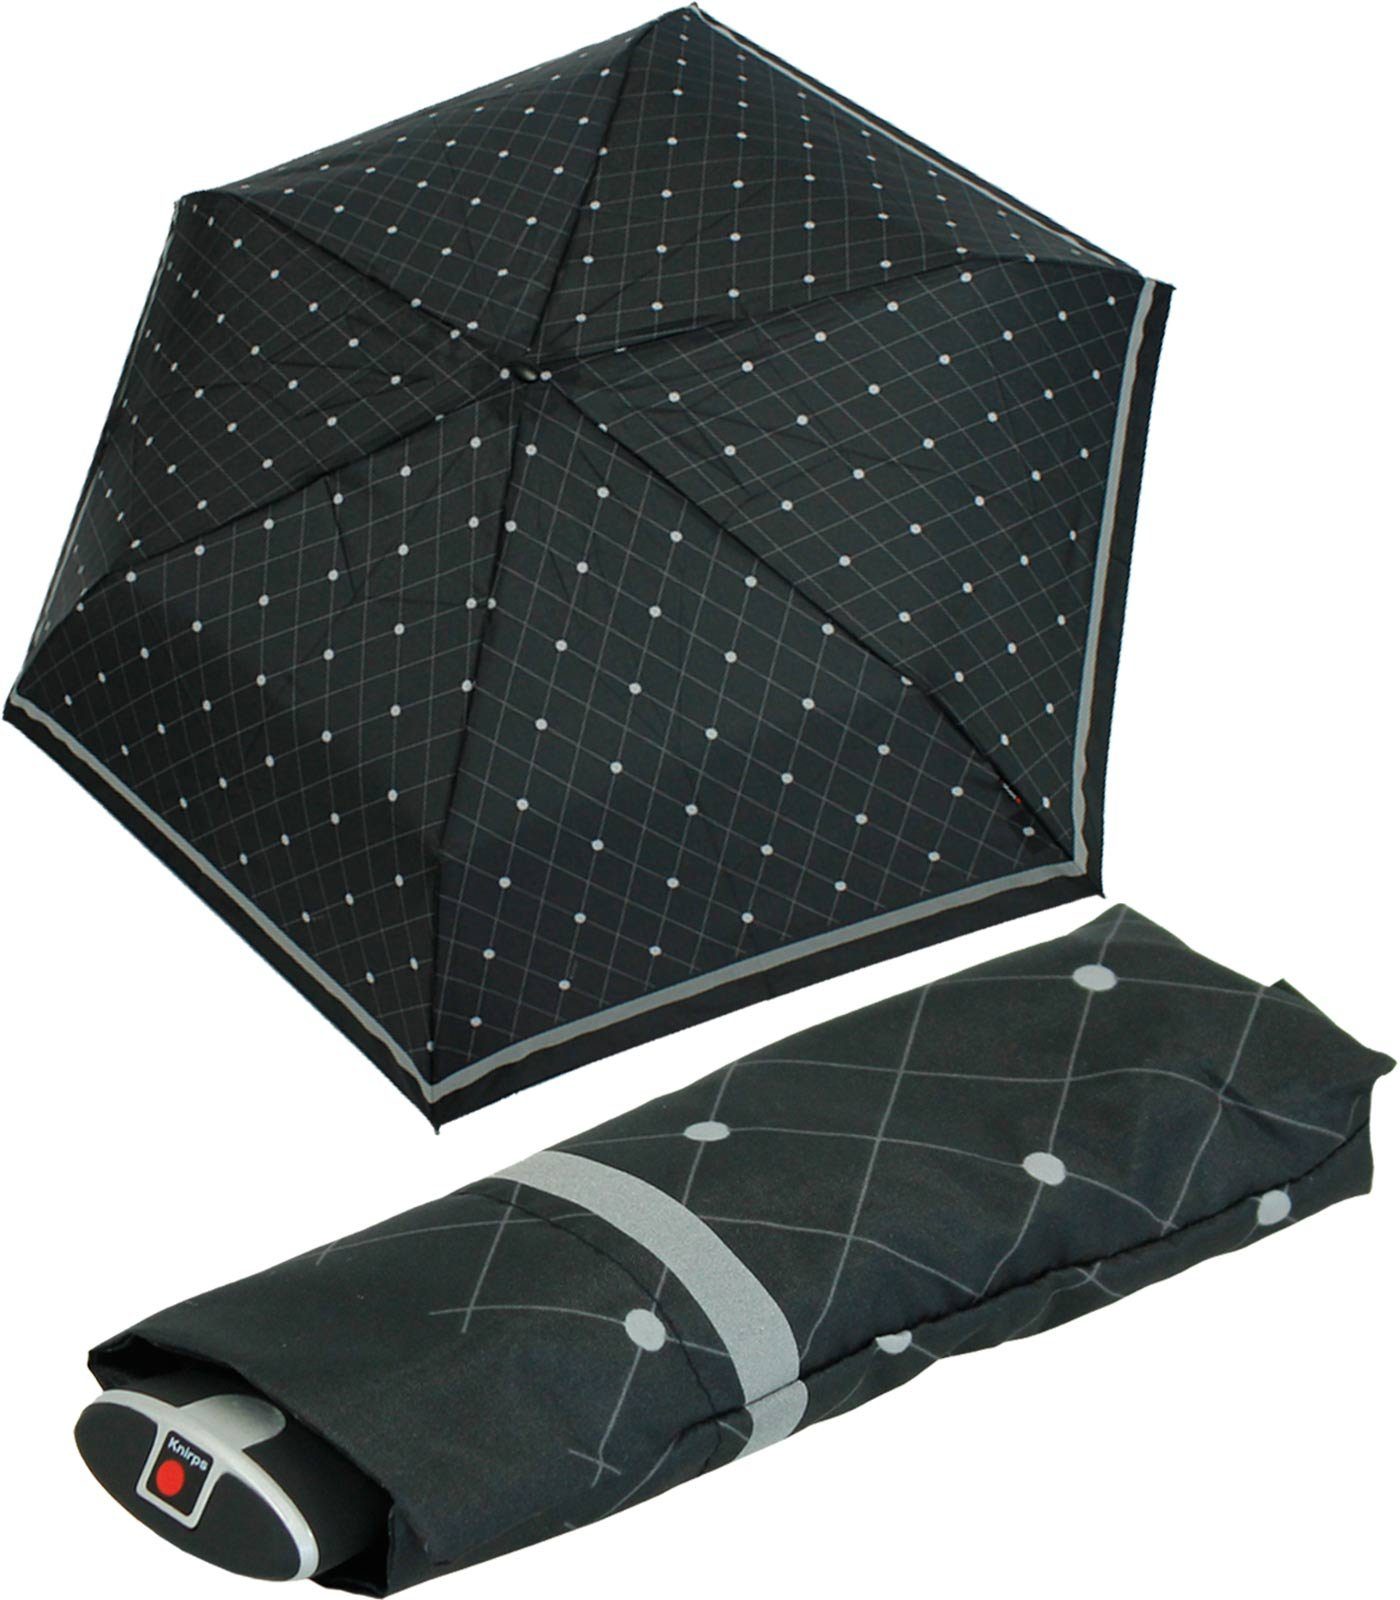 Knirps® Taschenregenschirm flacher, passend ein Notfall jede jeden Schirm, für Tasche, treuer stabiler Begleiter, für